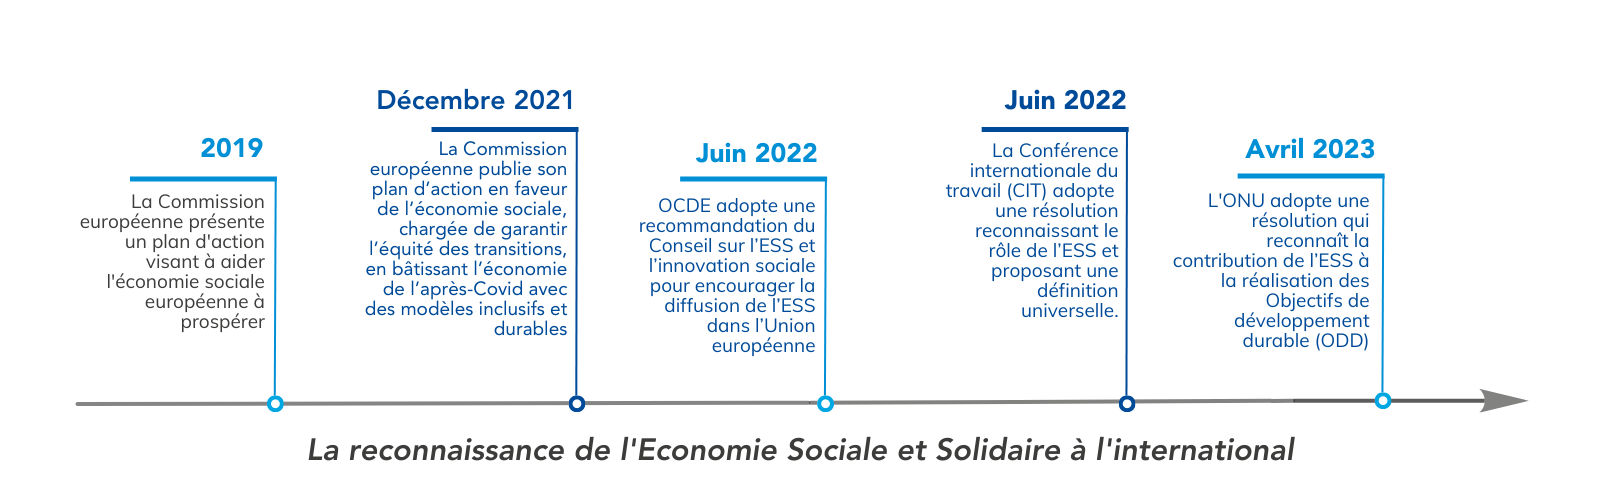 La reconnaissance de l'Economie Sociale et Solidaire à l'international | Source : CRESS de La Réunion - www.cress-reunion.com